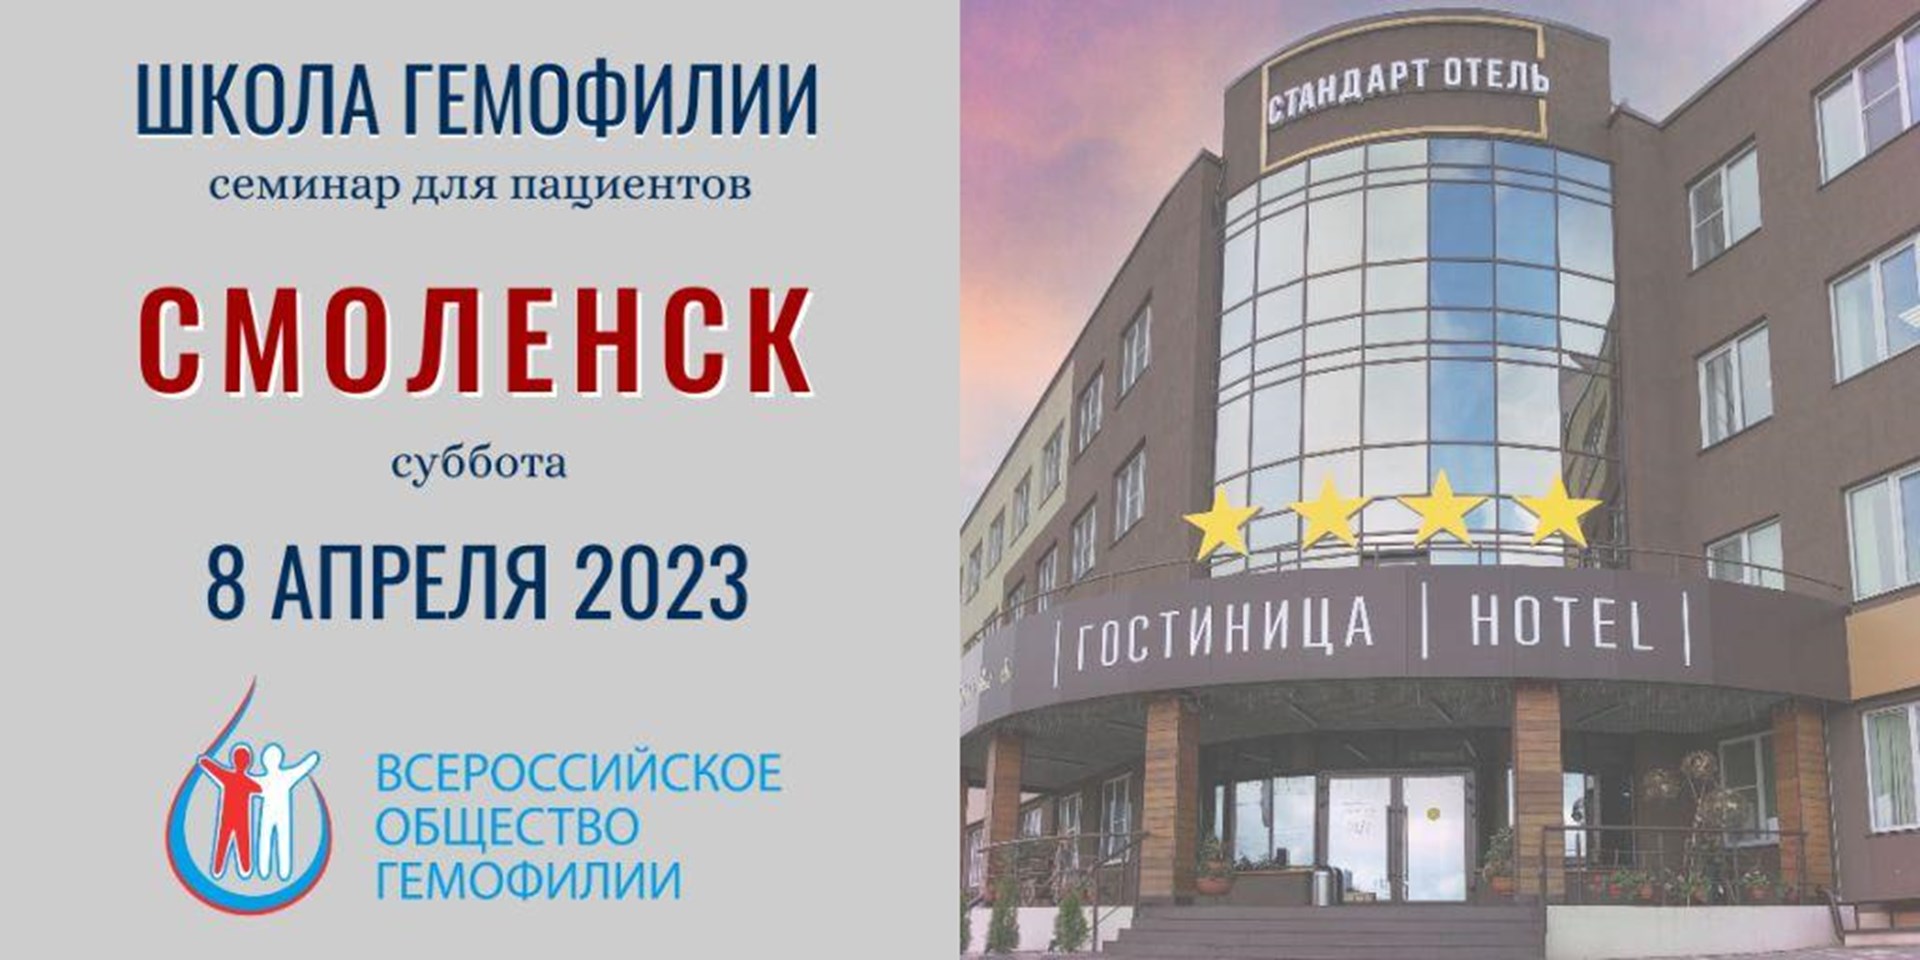 8 апреля 2023 года в Смоленске пройдет Школа гемофилии